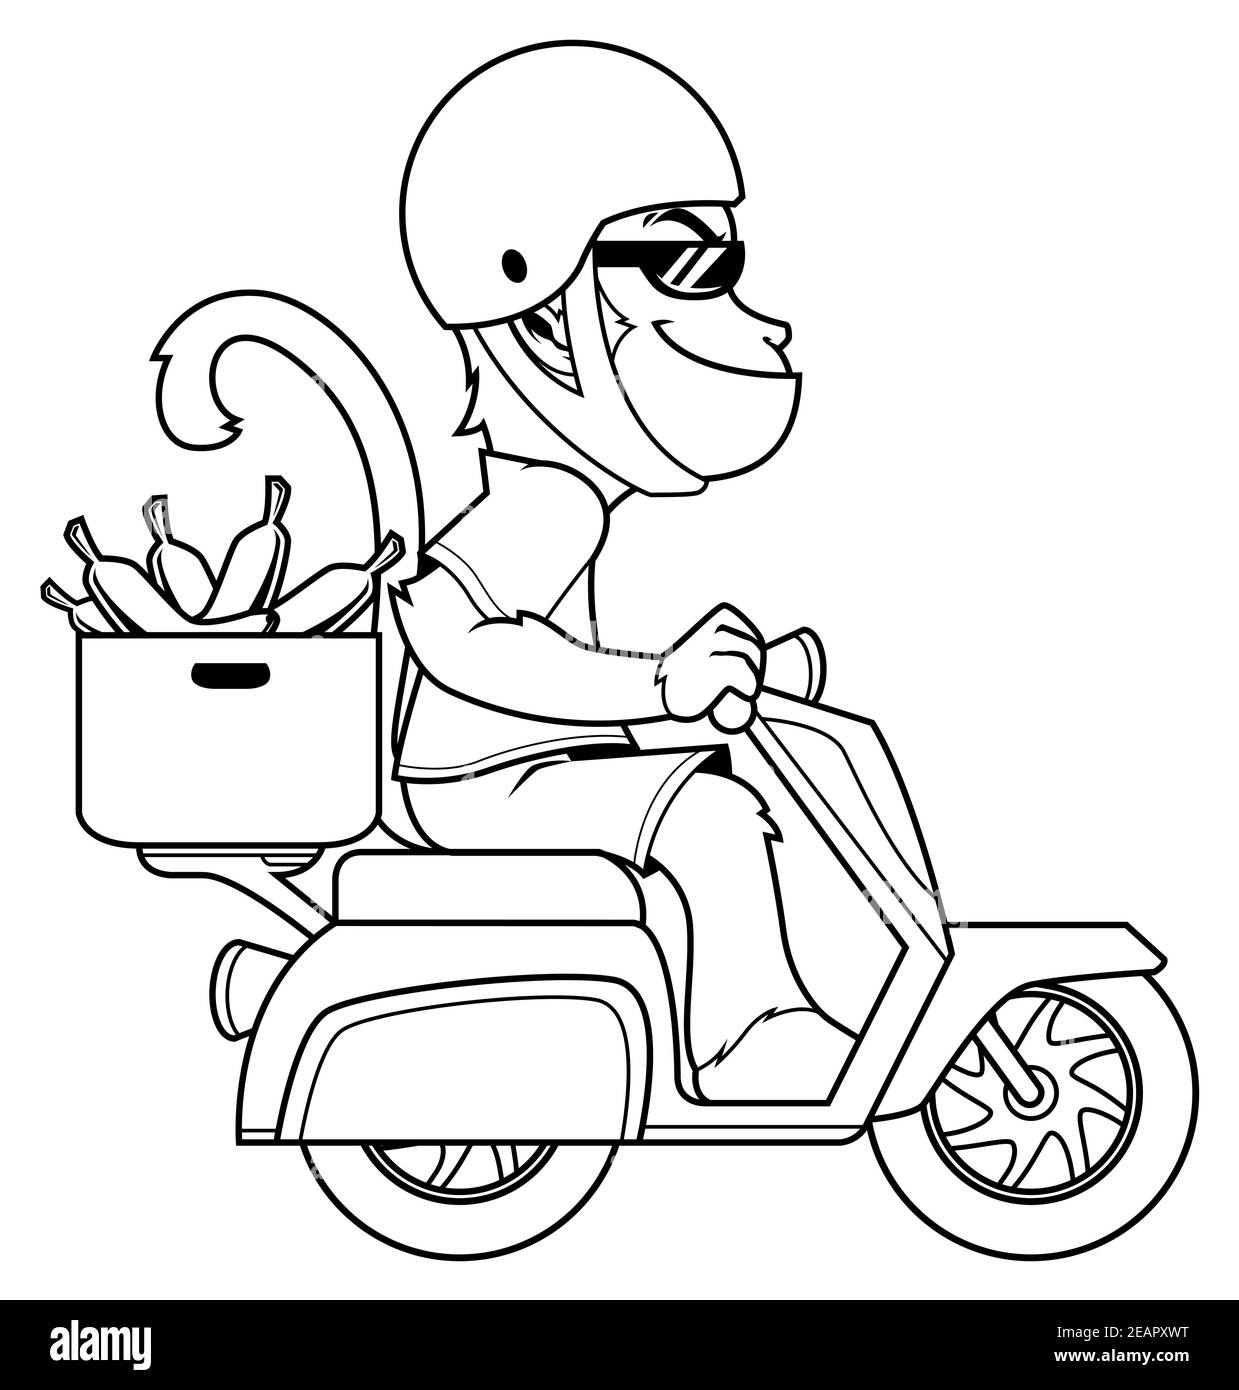 Monkey On Motor Bike Line Art Stock Vector